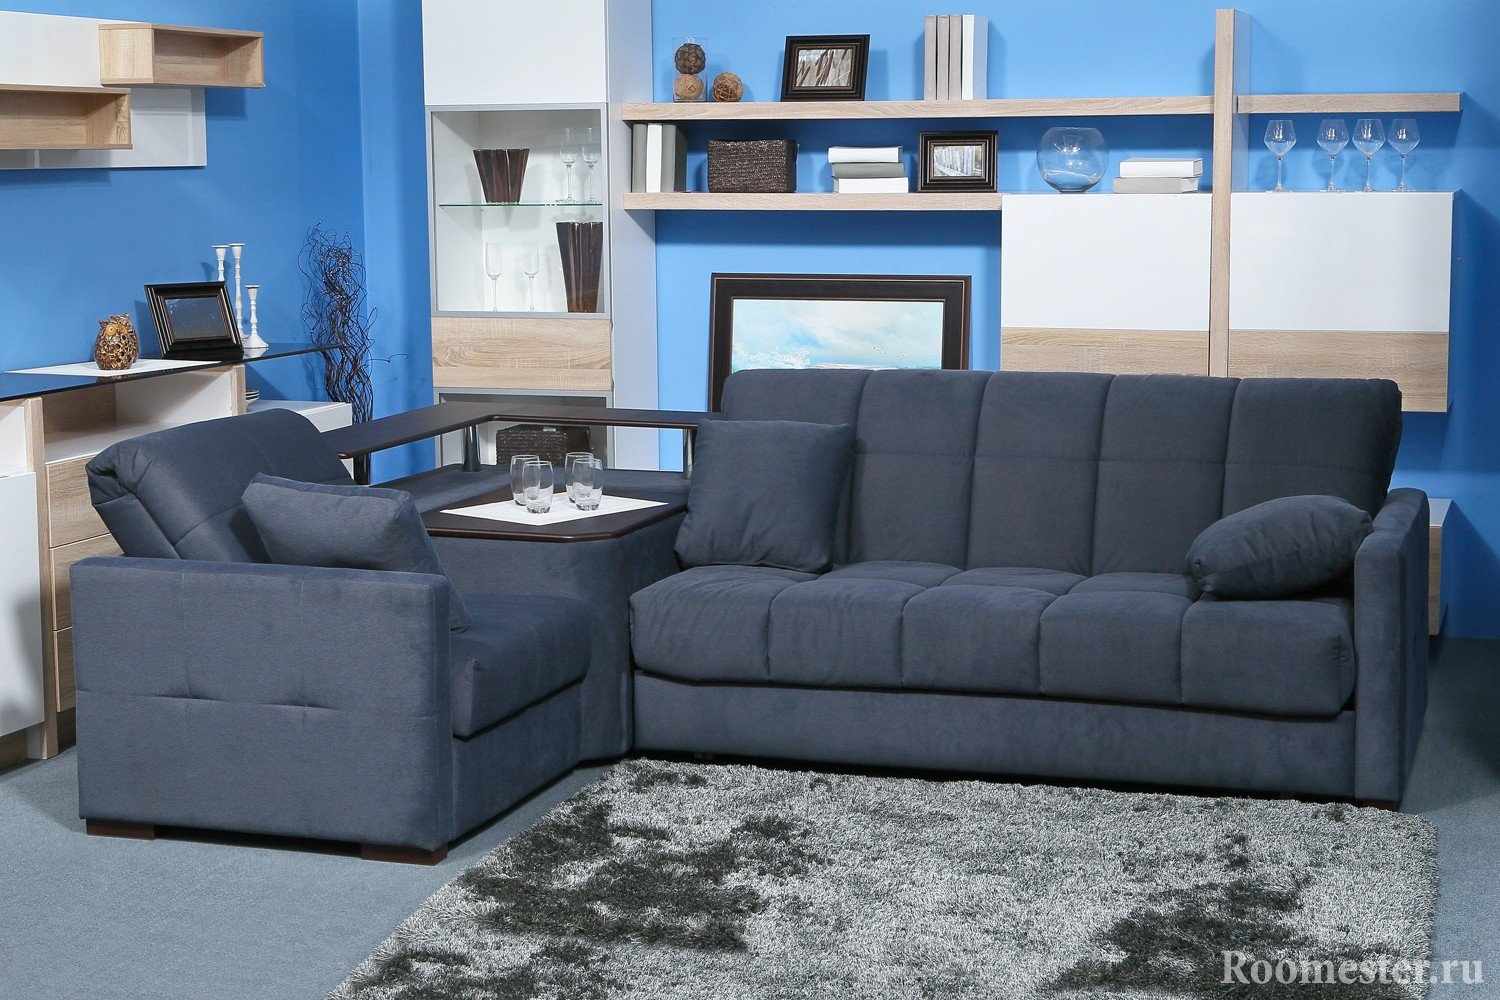 Серый диван в синей комнате